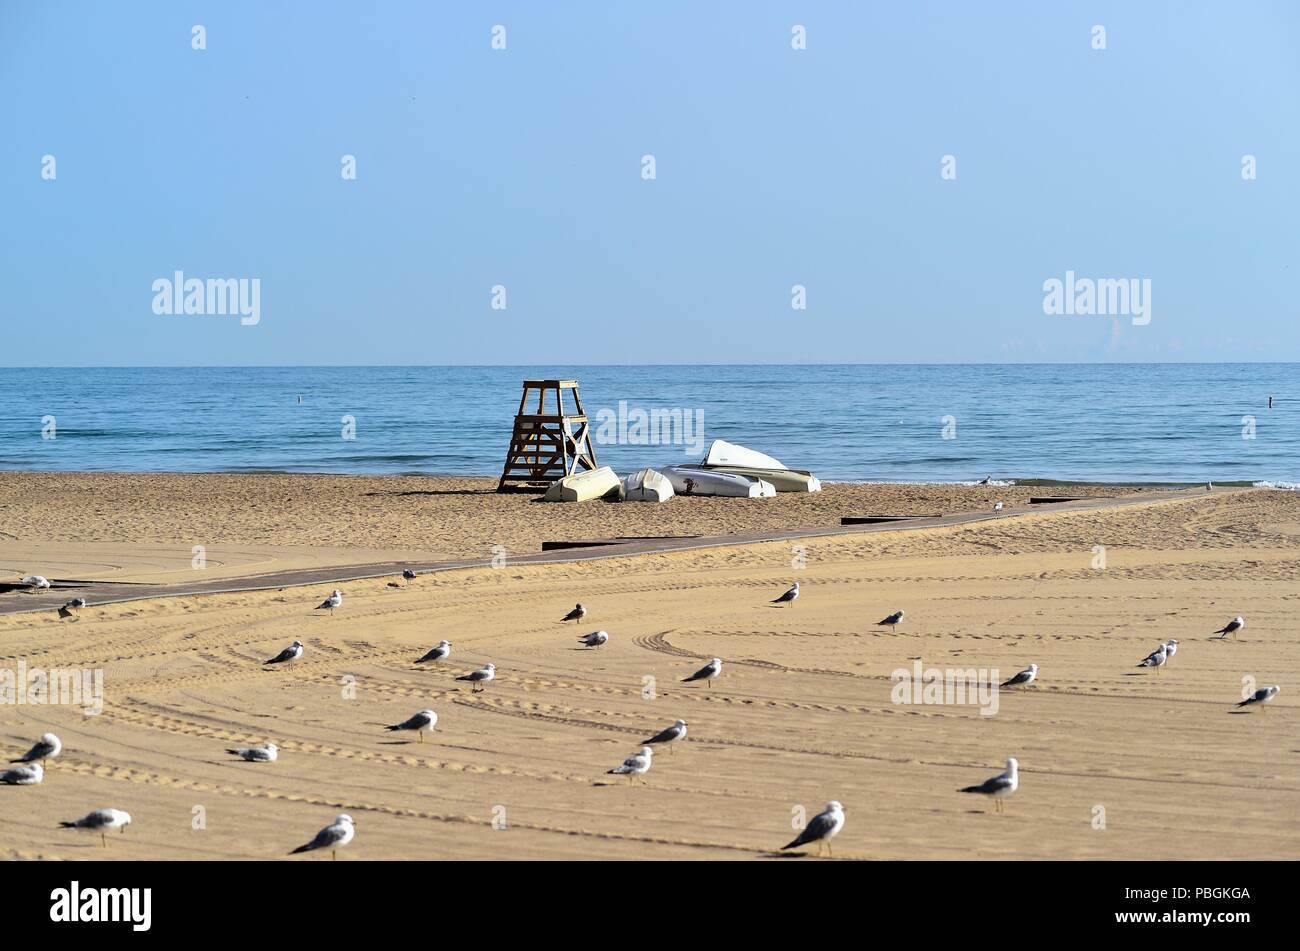 Chicago, Illinois, USA. Une étendue de sable vide habité seulement par les mouettes et une vie station de la Garde côtière canadienne de Hollywood Beach, alias Kathy Osterman Beach). Banque D'Images